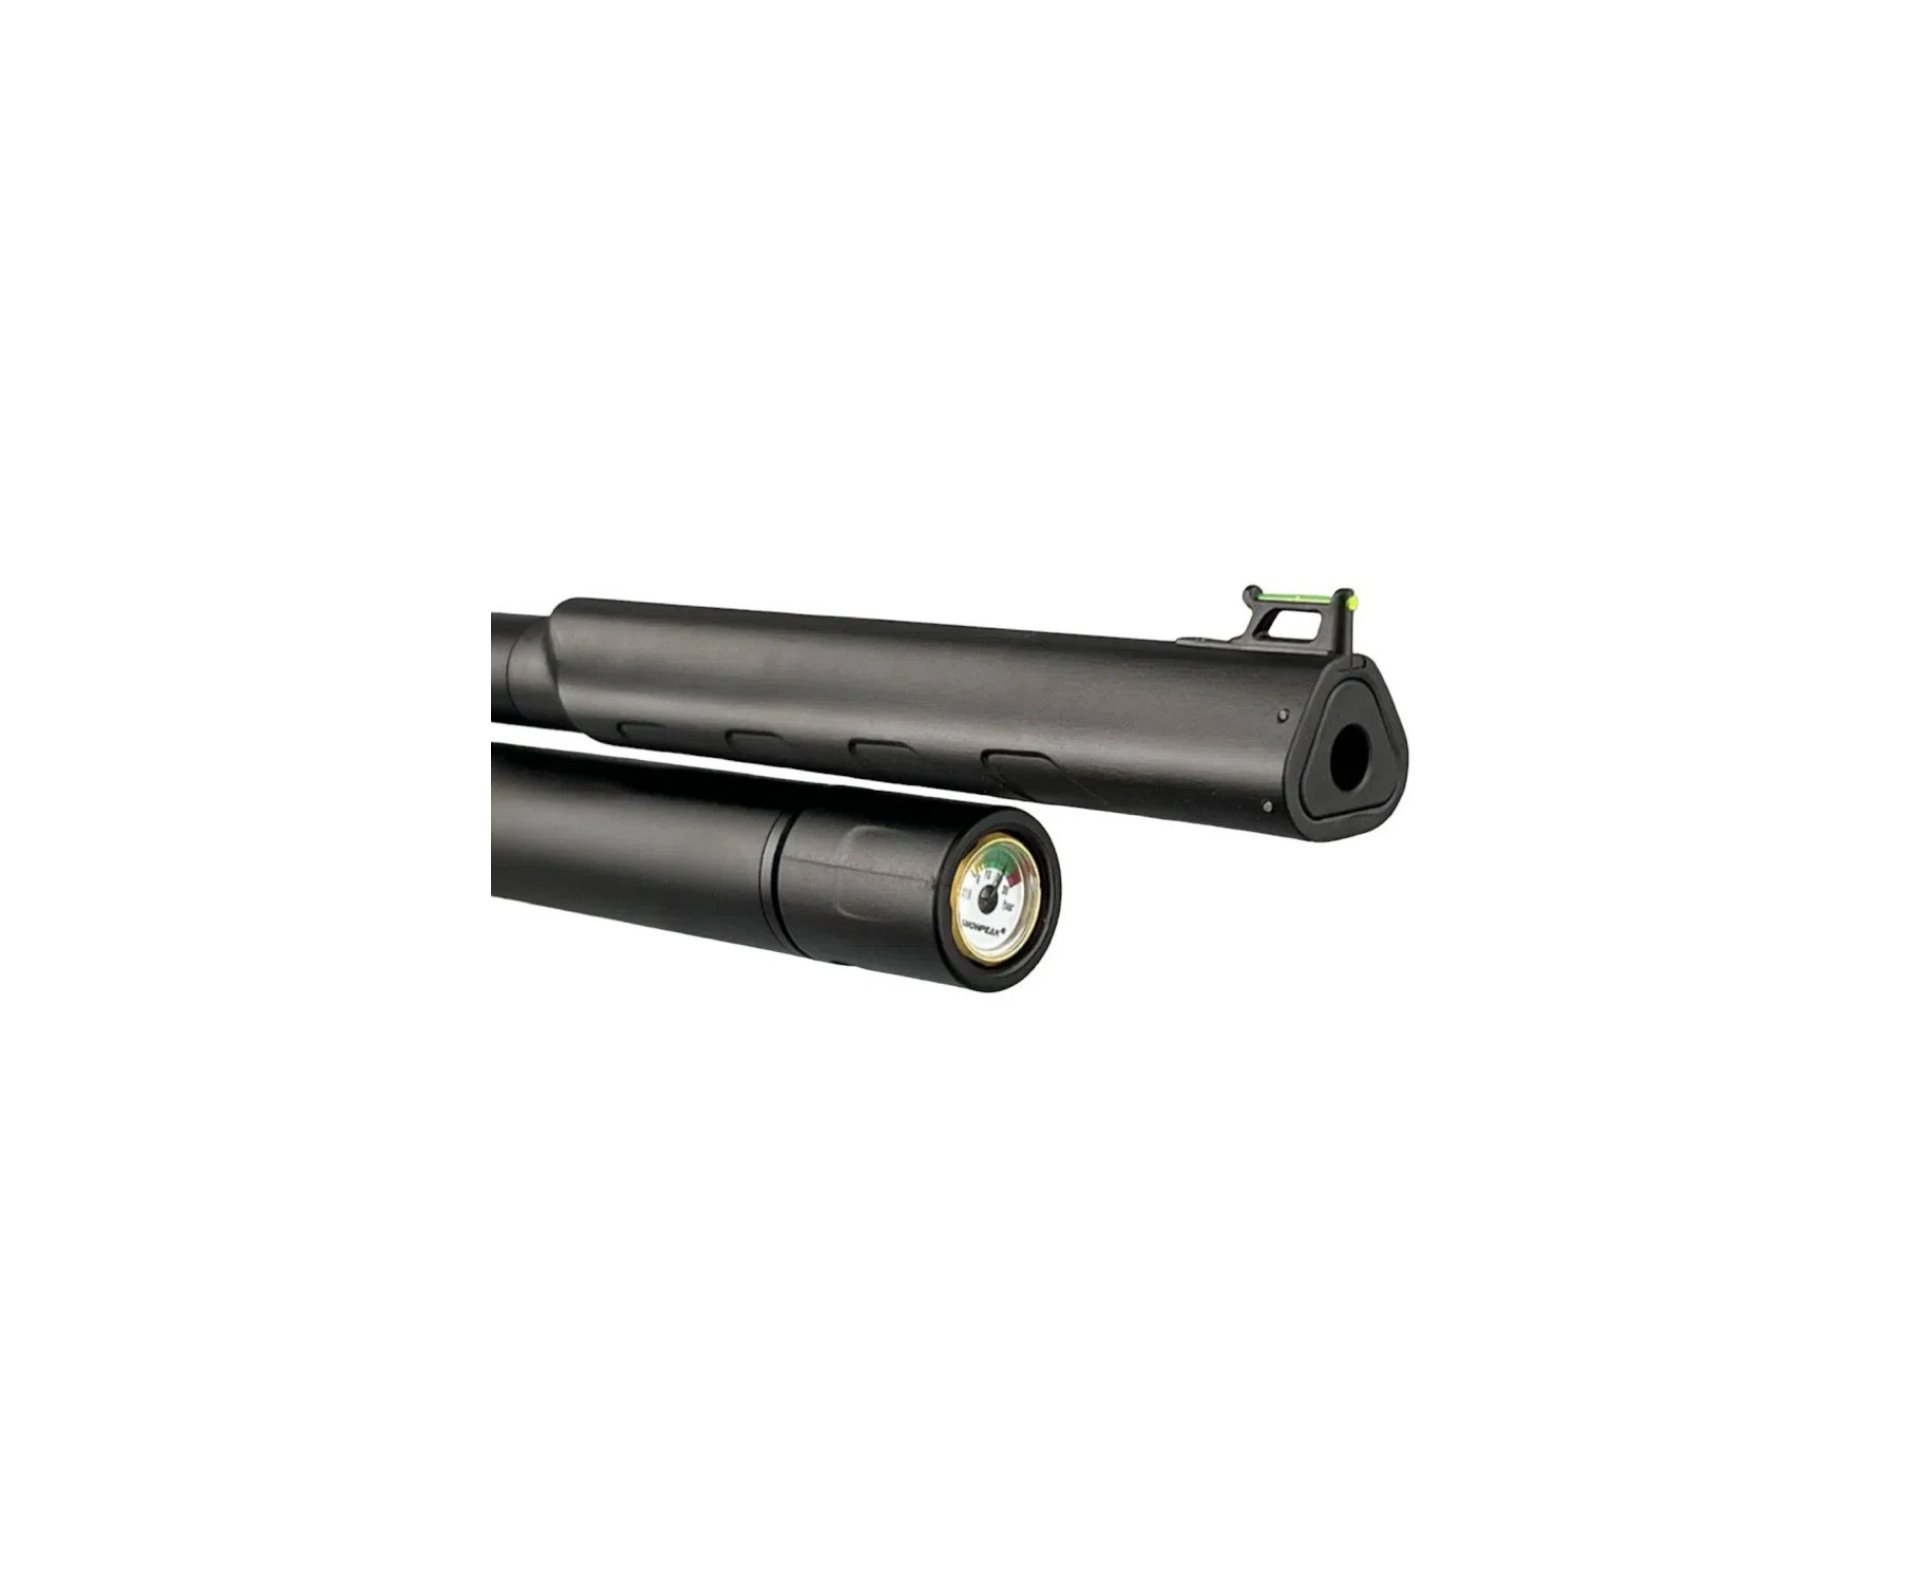 Carabina de Pressão PCP Artemis T-REX 5.5mm com Válvula Reguladora - Fixxar + Luneta 4-16x50 + Mount 22mm